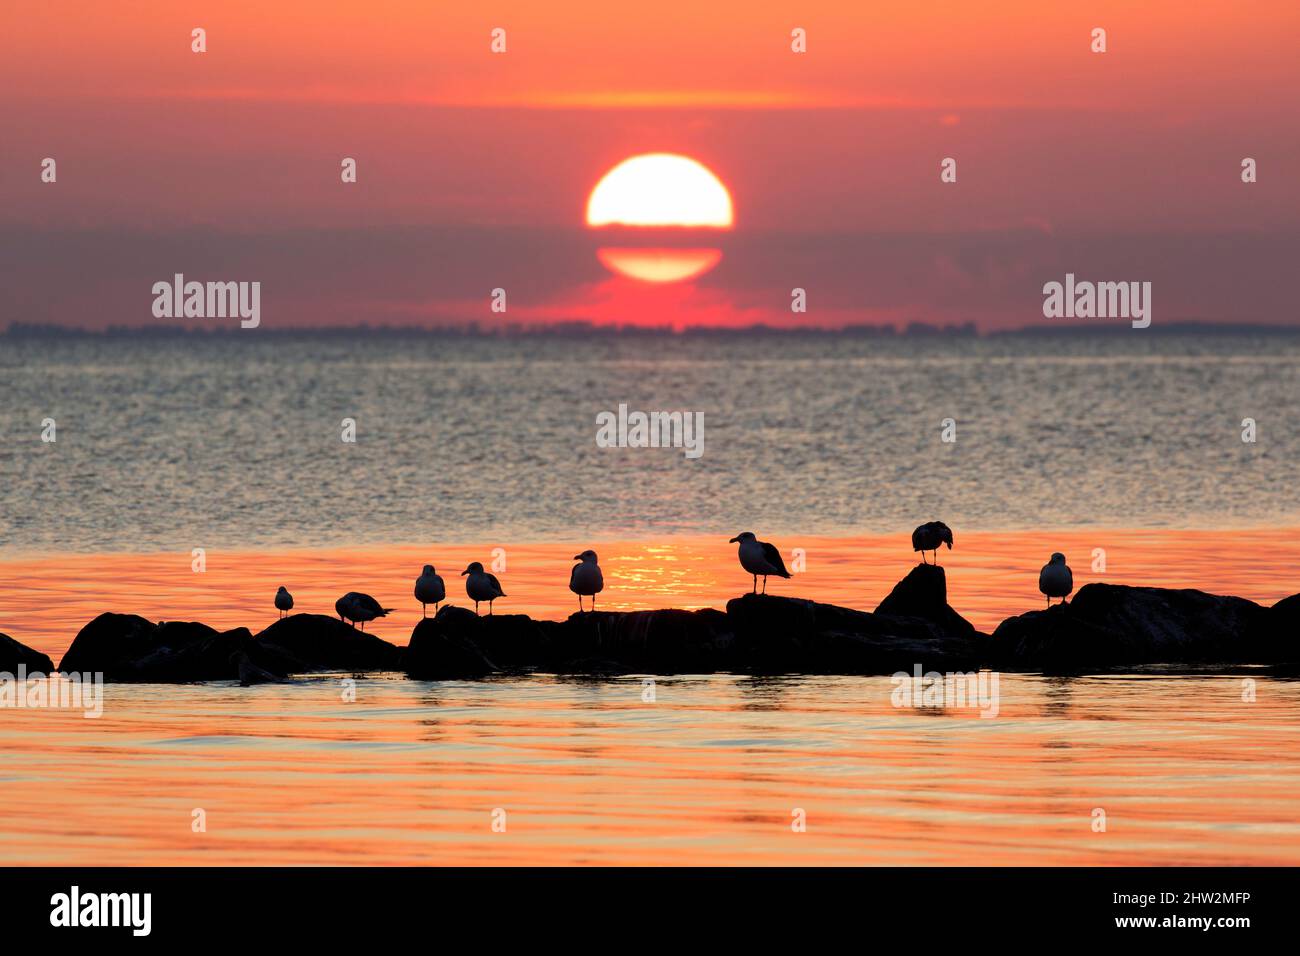 Schwarm großer Möwen (Larus marinus), die auf Felsen im Meer ruhen und vor untergehenden Sonnenstrahlen und orangefarbenem Sonnenuntergang am Himmel geschildert sind Stockfoto